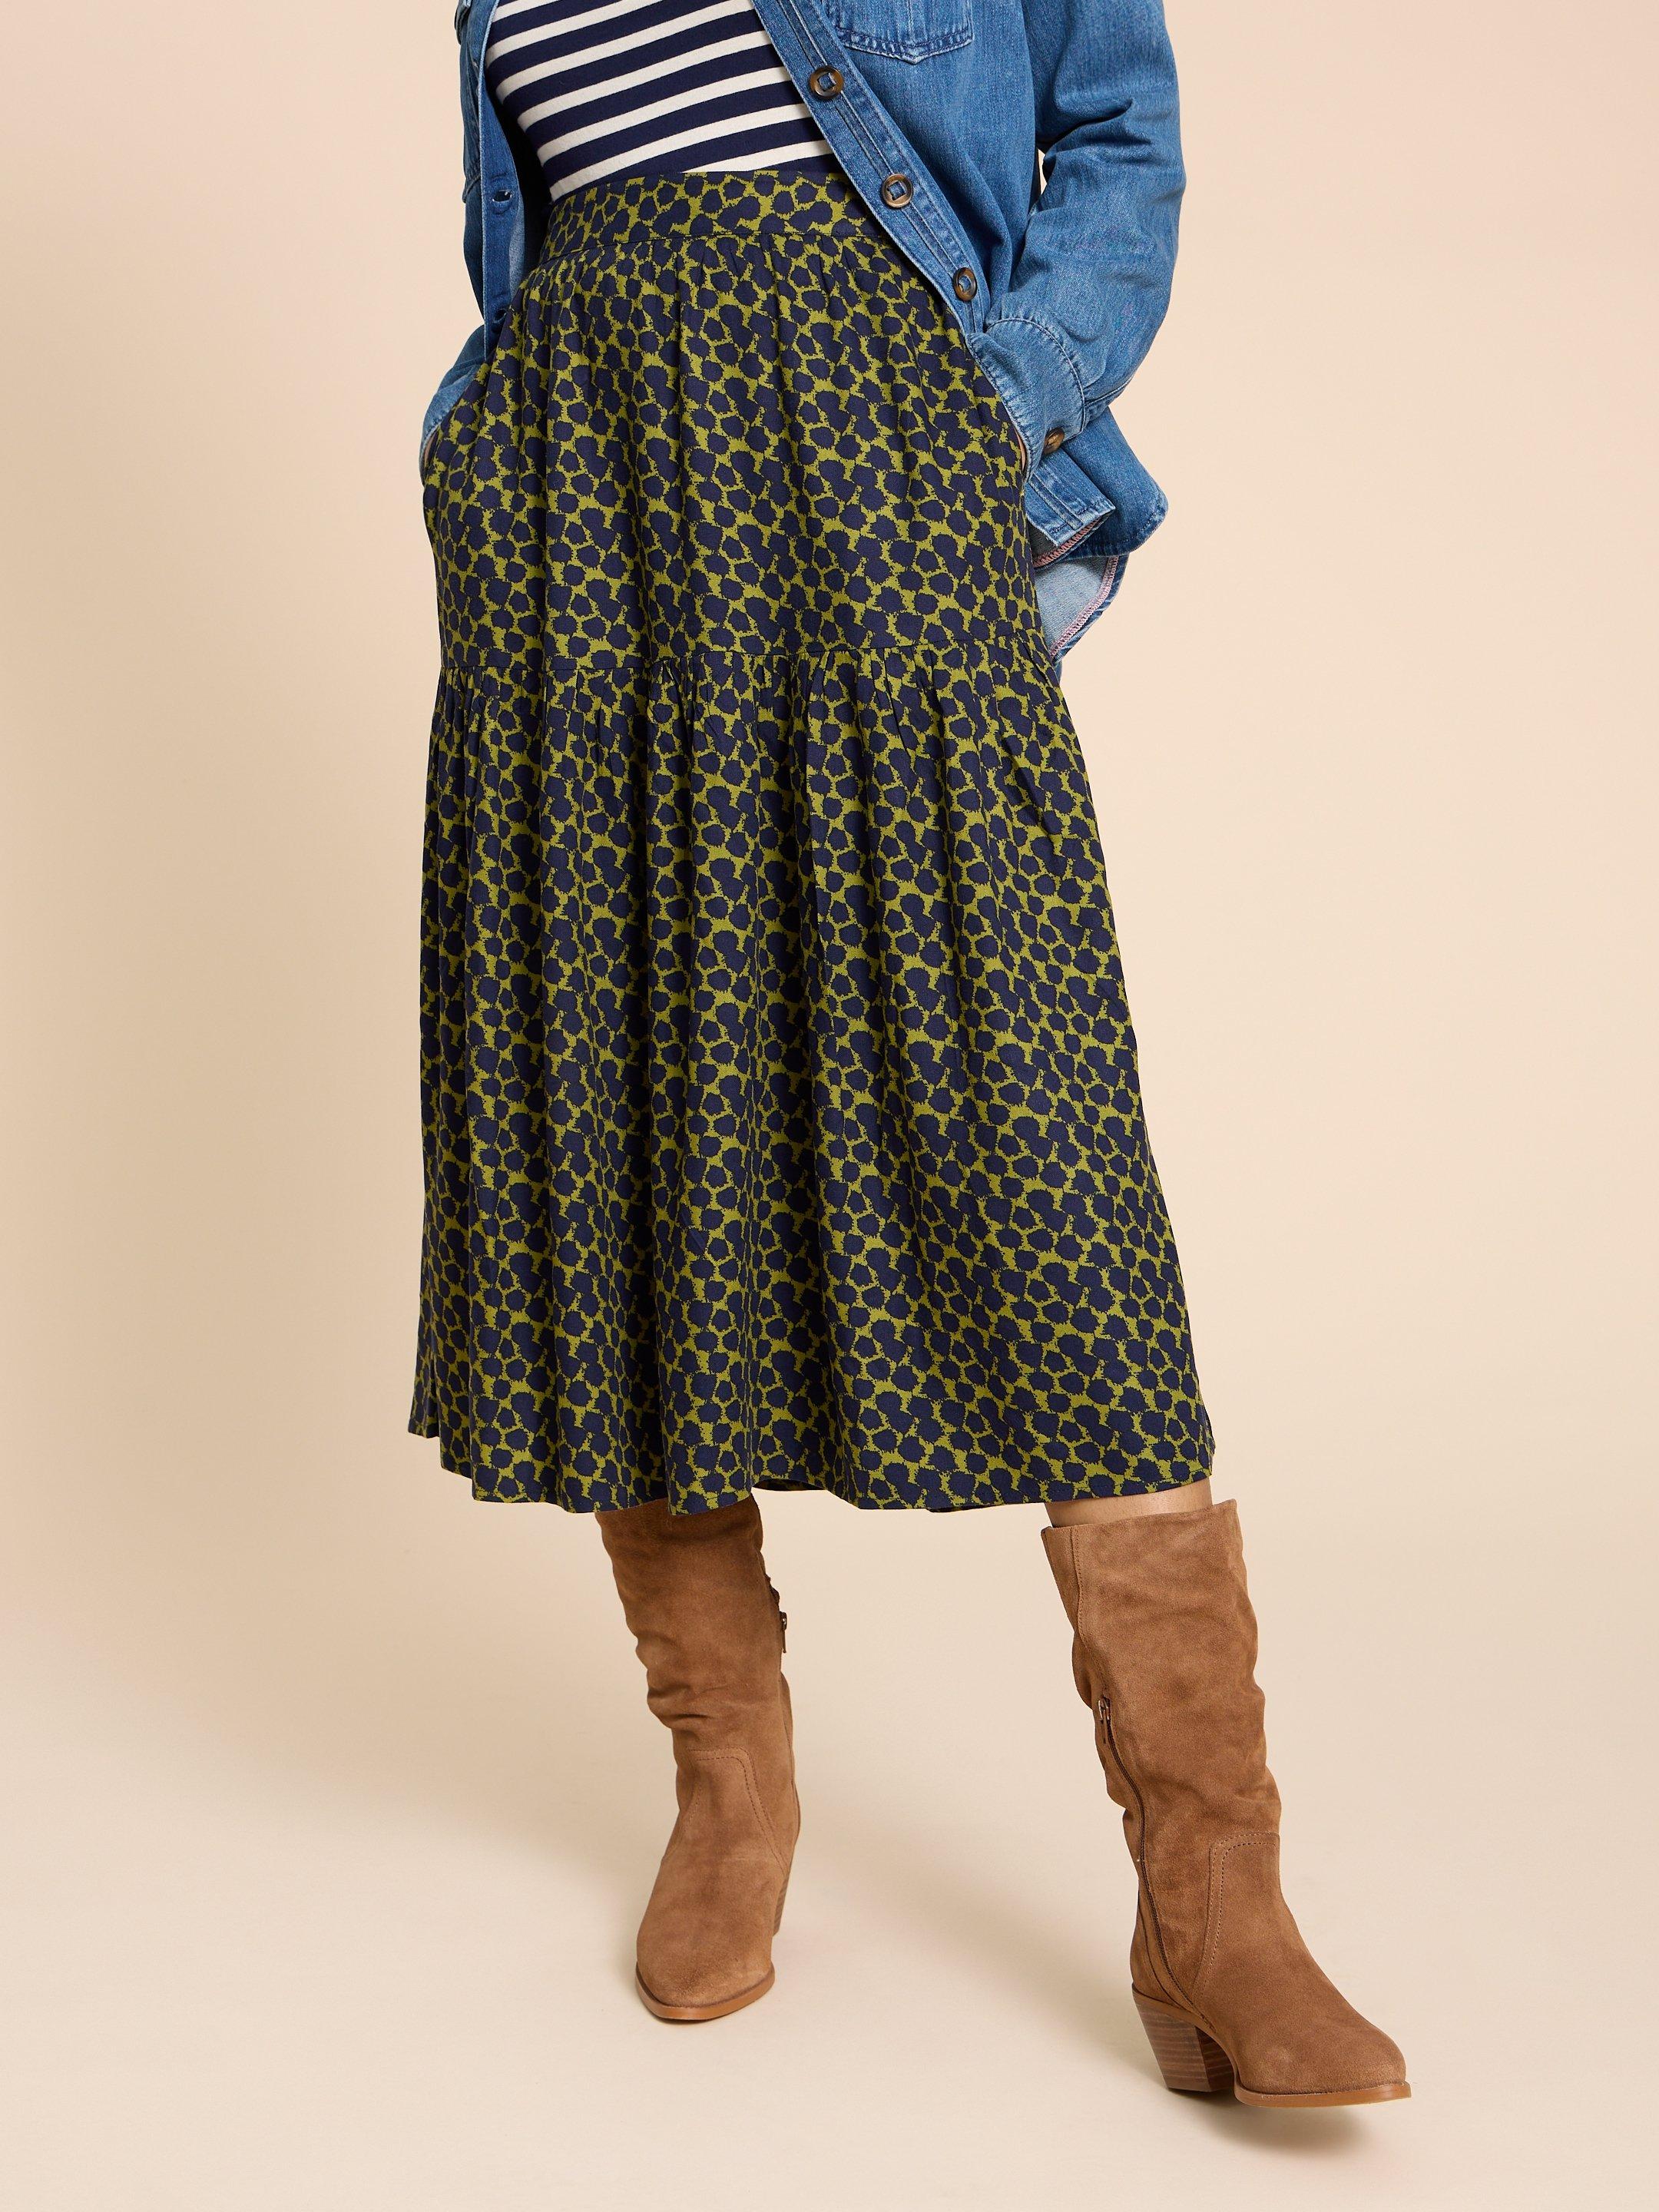 Jamima Eco Vero Skirt in NAVY MULTI - MODEL DETAIL